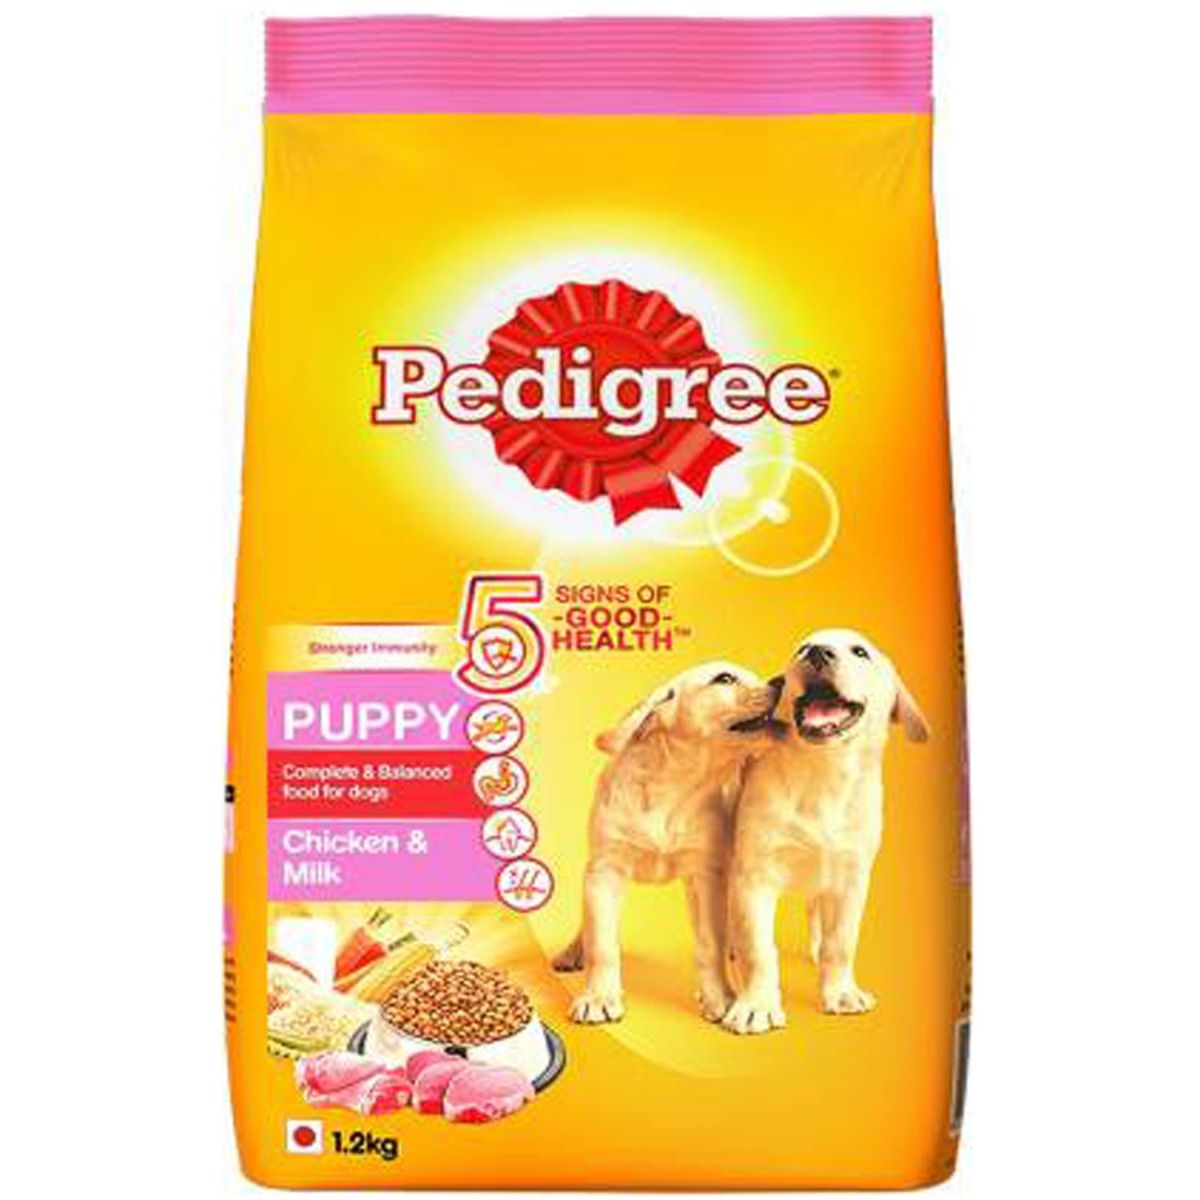 Pedigree Chicken & Milk Puppy Dog Food, 1.2 kg, Pack of 1 